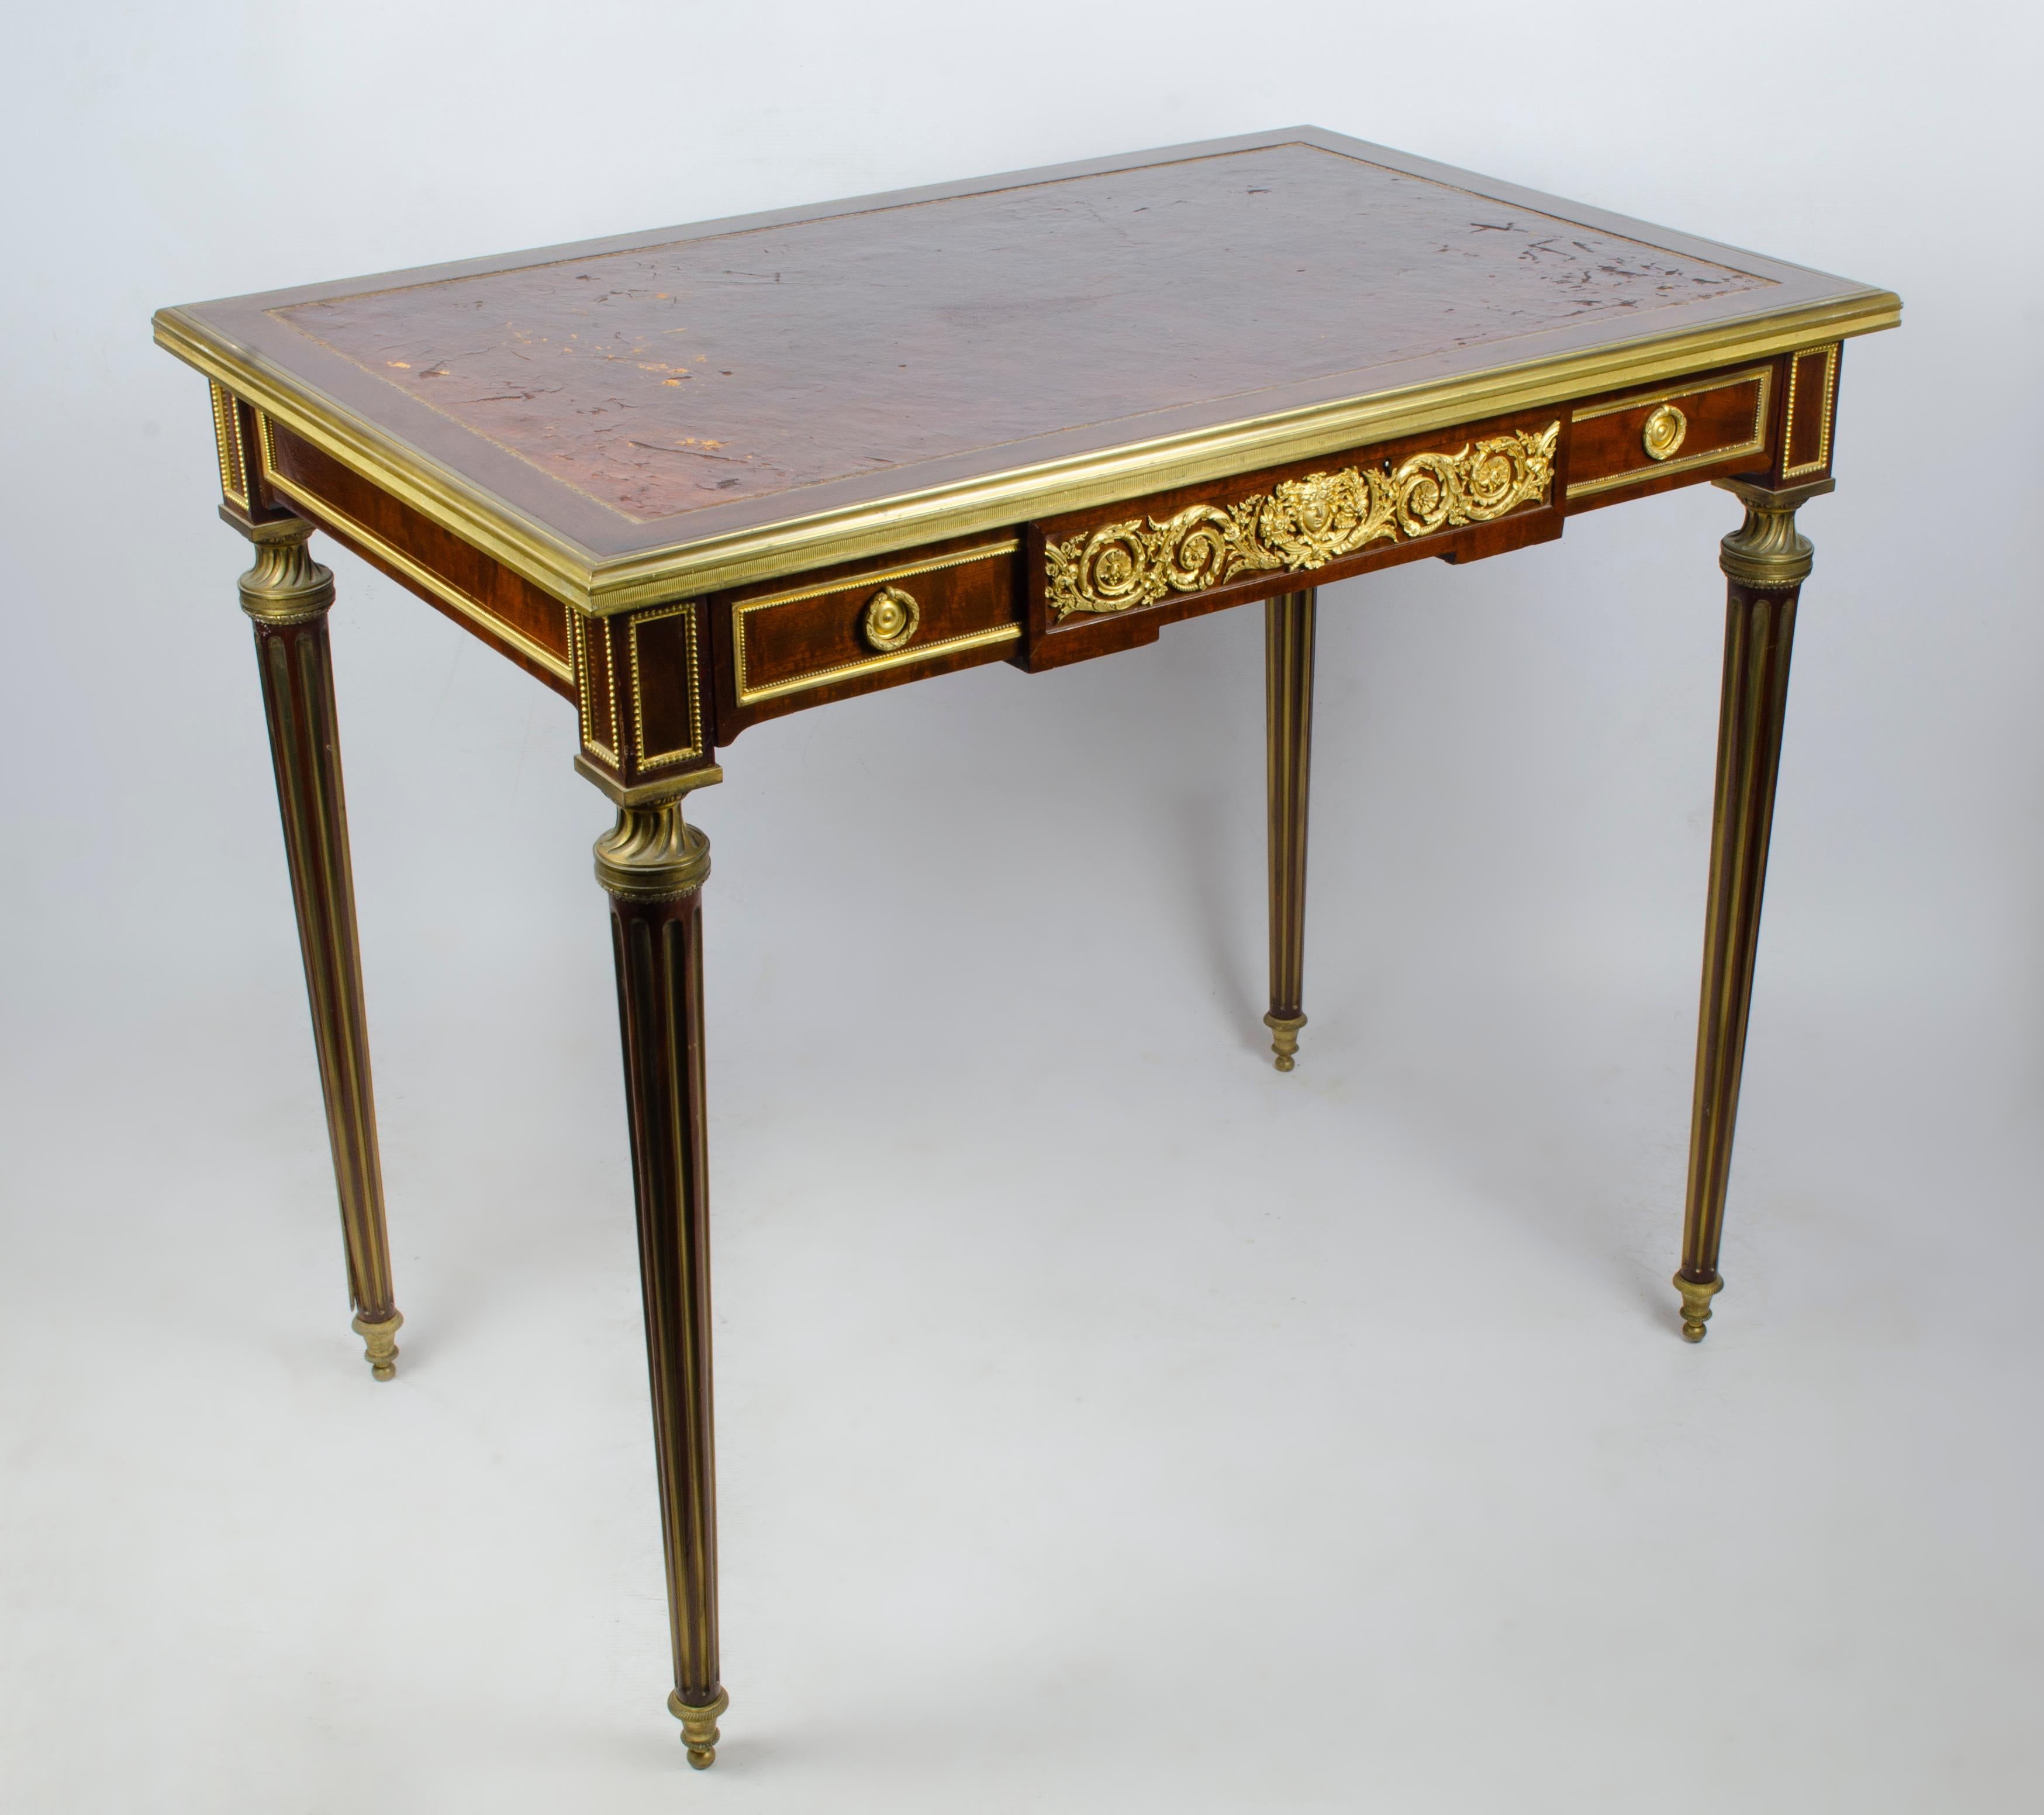 Elegant bureau de style Louis XVI réalisé par Paul Sormani (1817-1877). En bois plaqué et bronze doré gainé d'un cuir havane patiné. Mouluré et décoré sur toutes ses faces d'une riche ornementation de bronze doré, il contient un grand tiroir orné